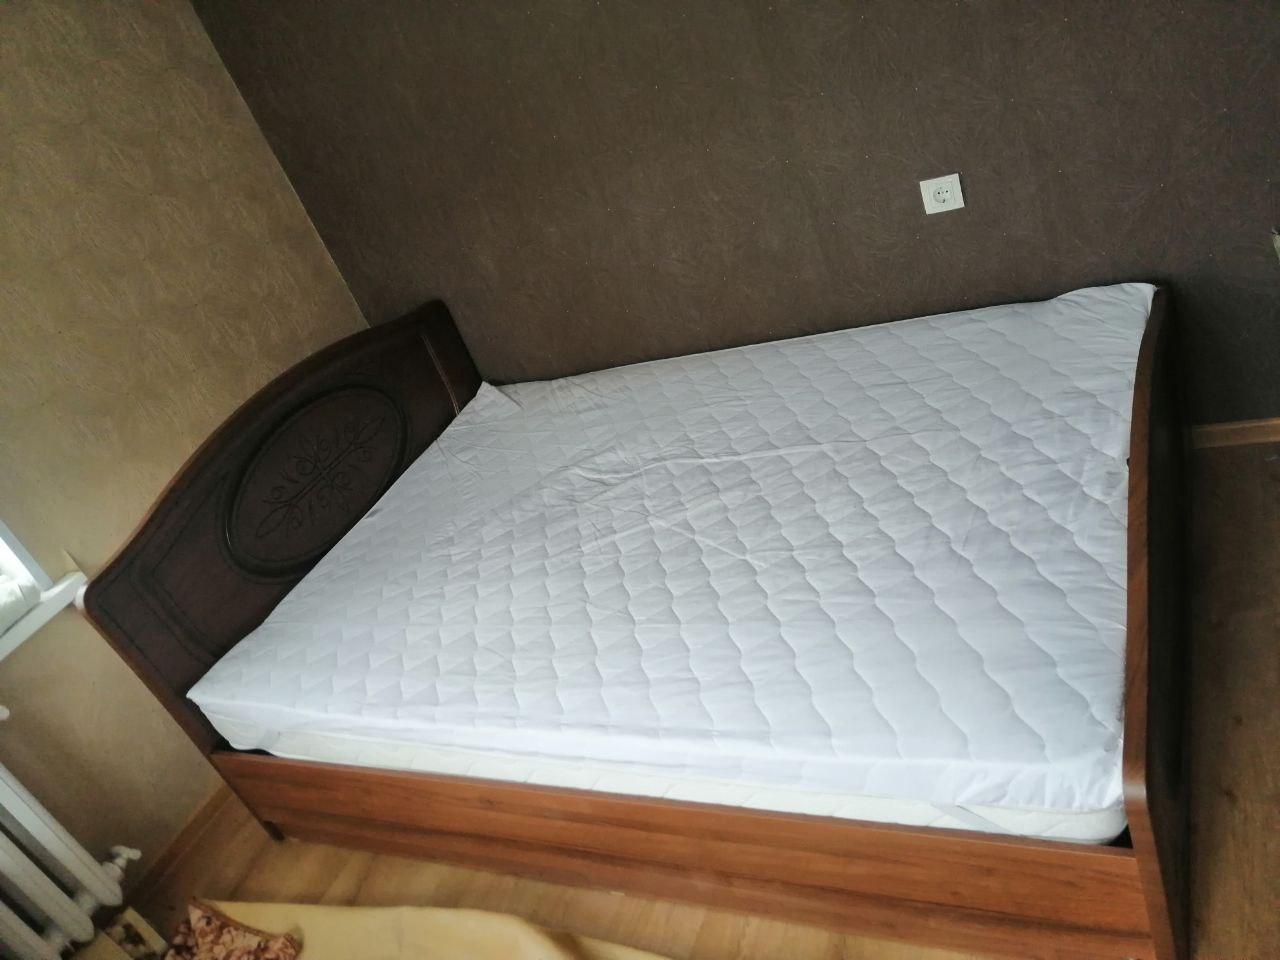 Двуспальная кровать "Натали" 180х190 с подъемным механизмом цвет клен / ясень бежевый изножье низкое